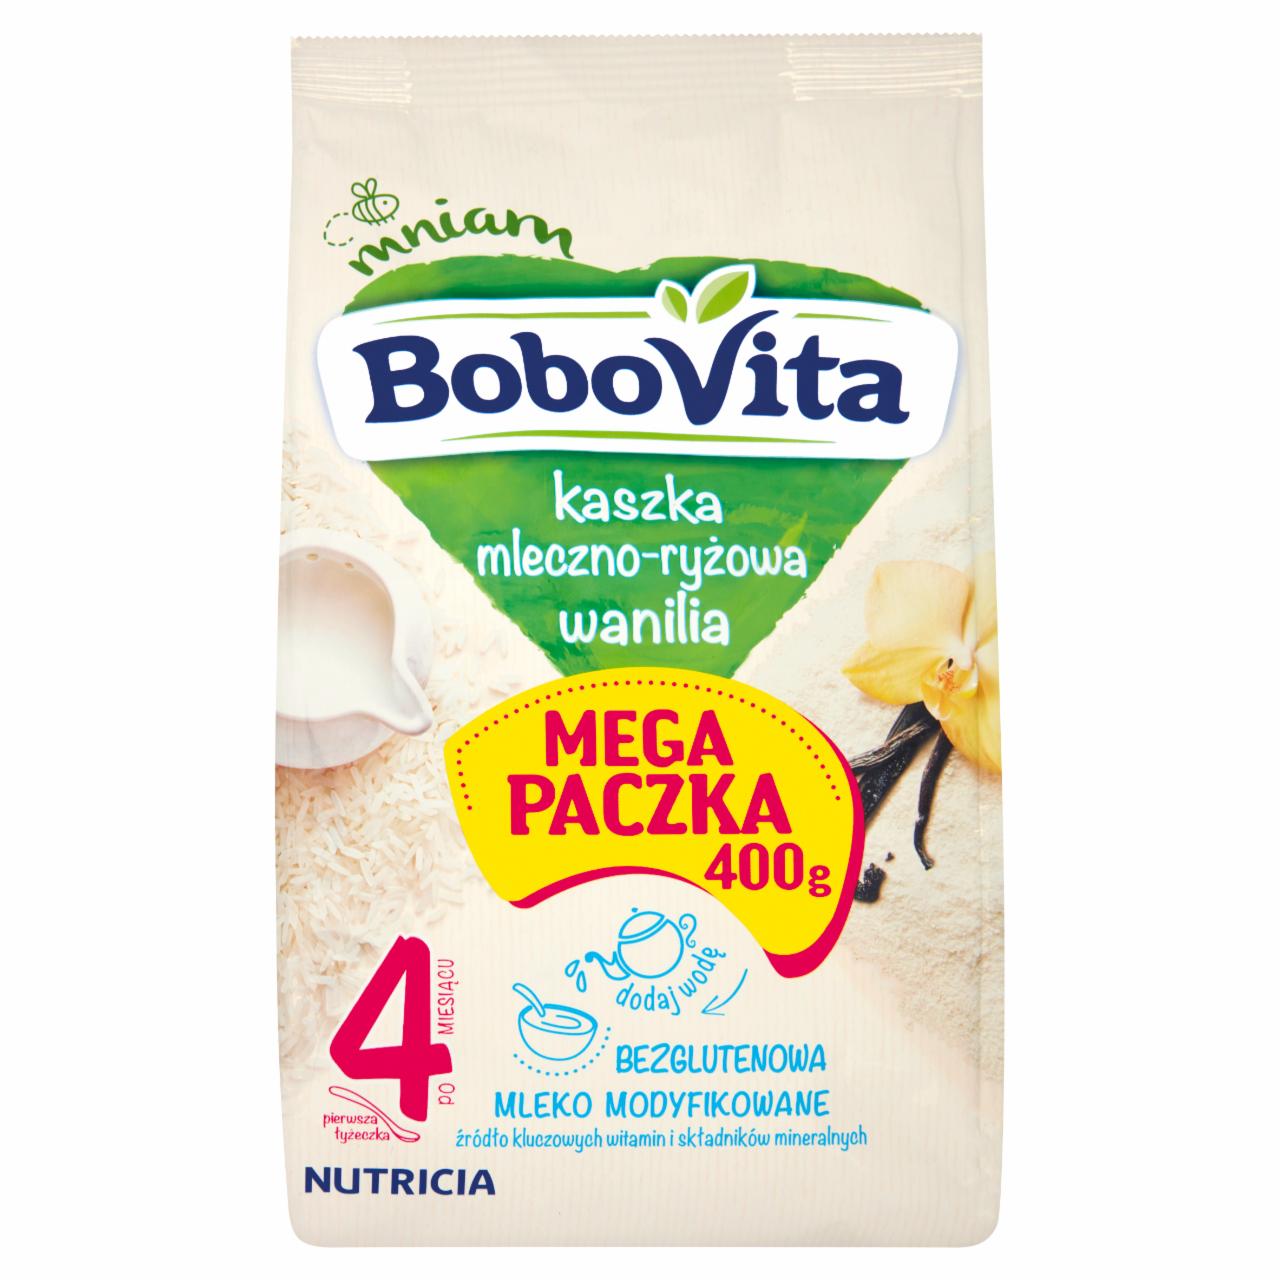 Zdjęcia - BoboVita Kaszka mleczno-ryżowa wanilia po 4 miesiącu 400 g